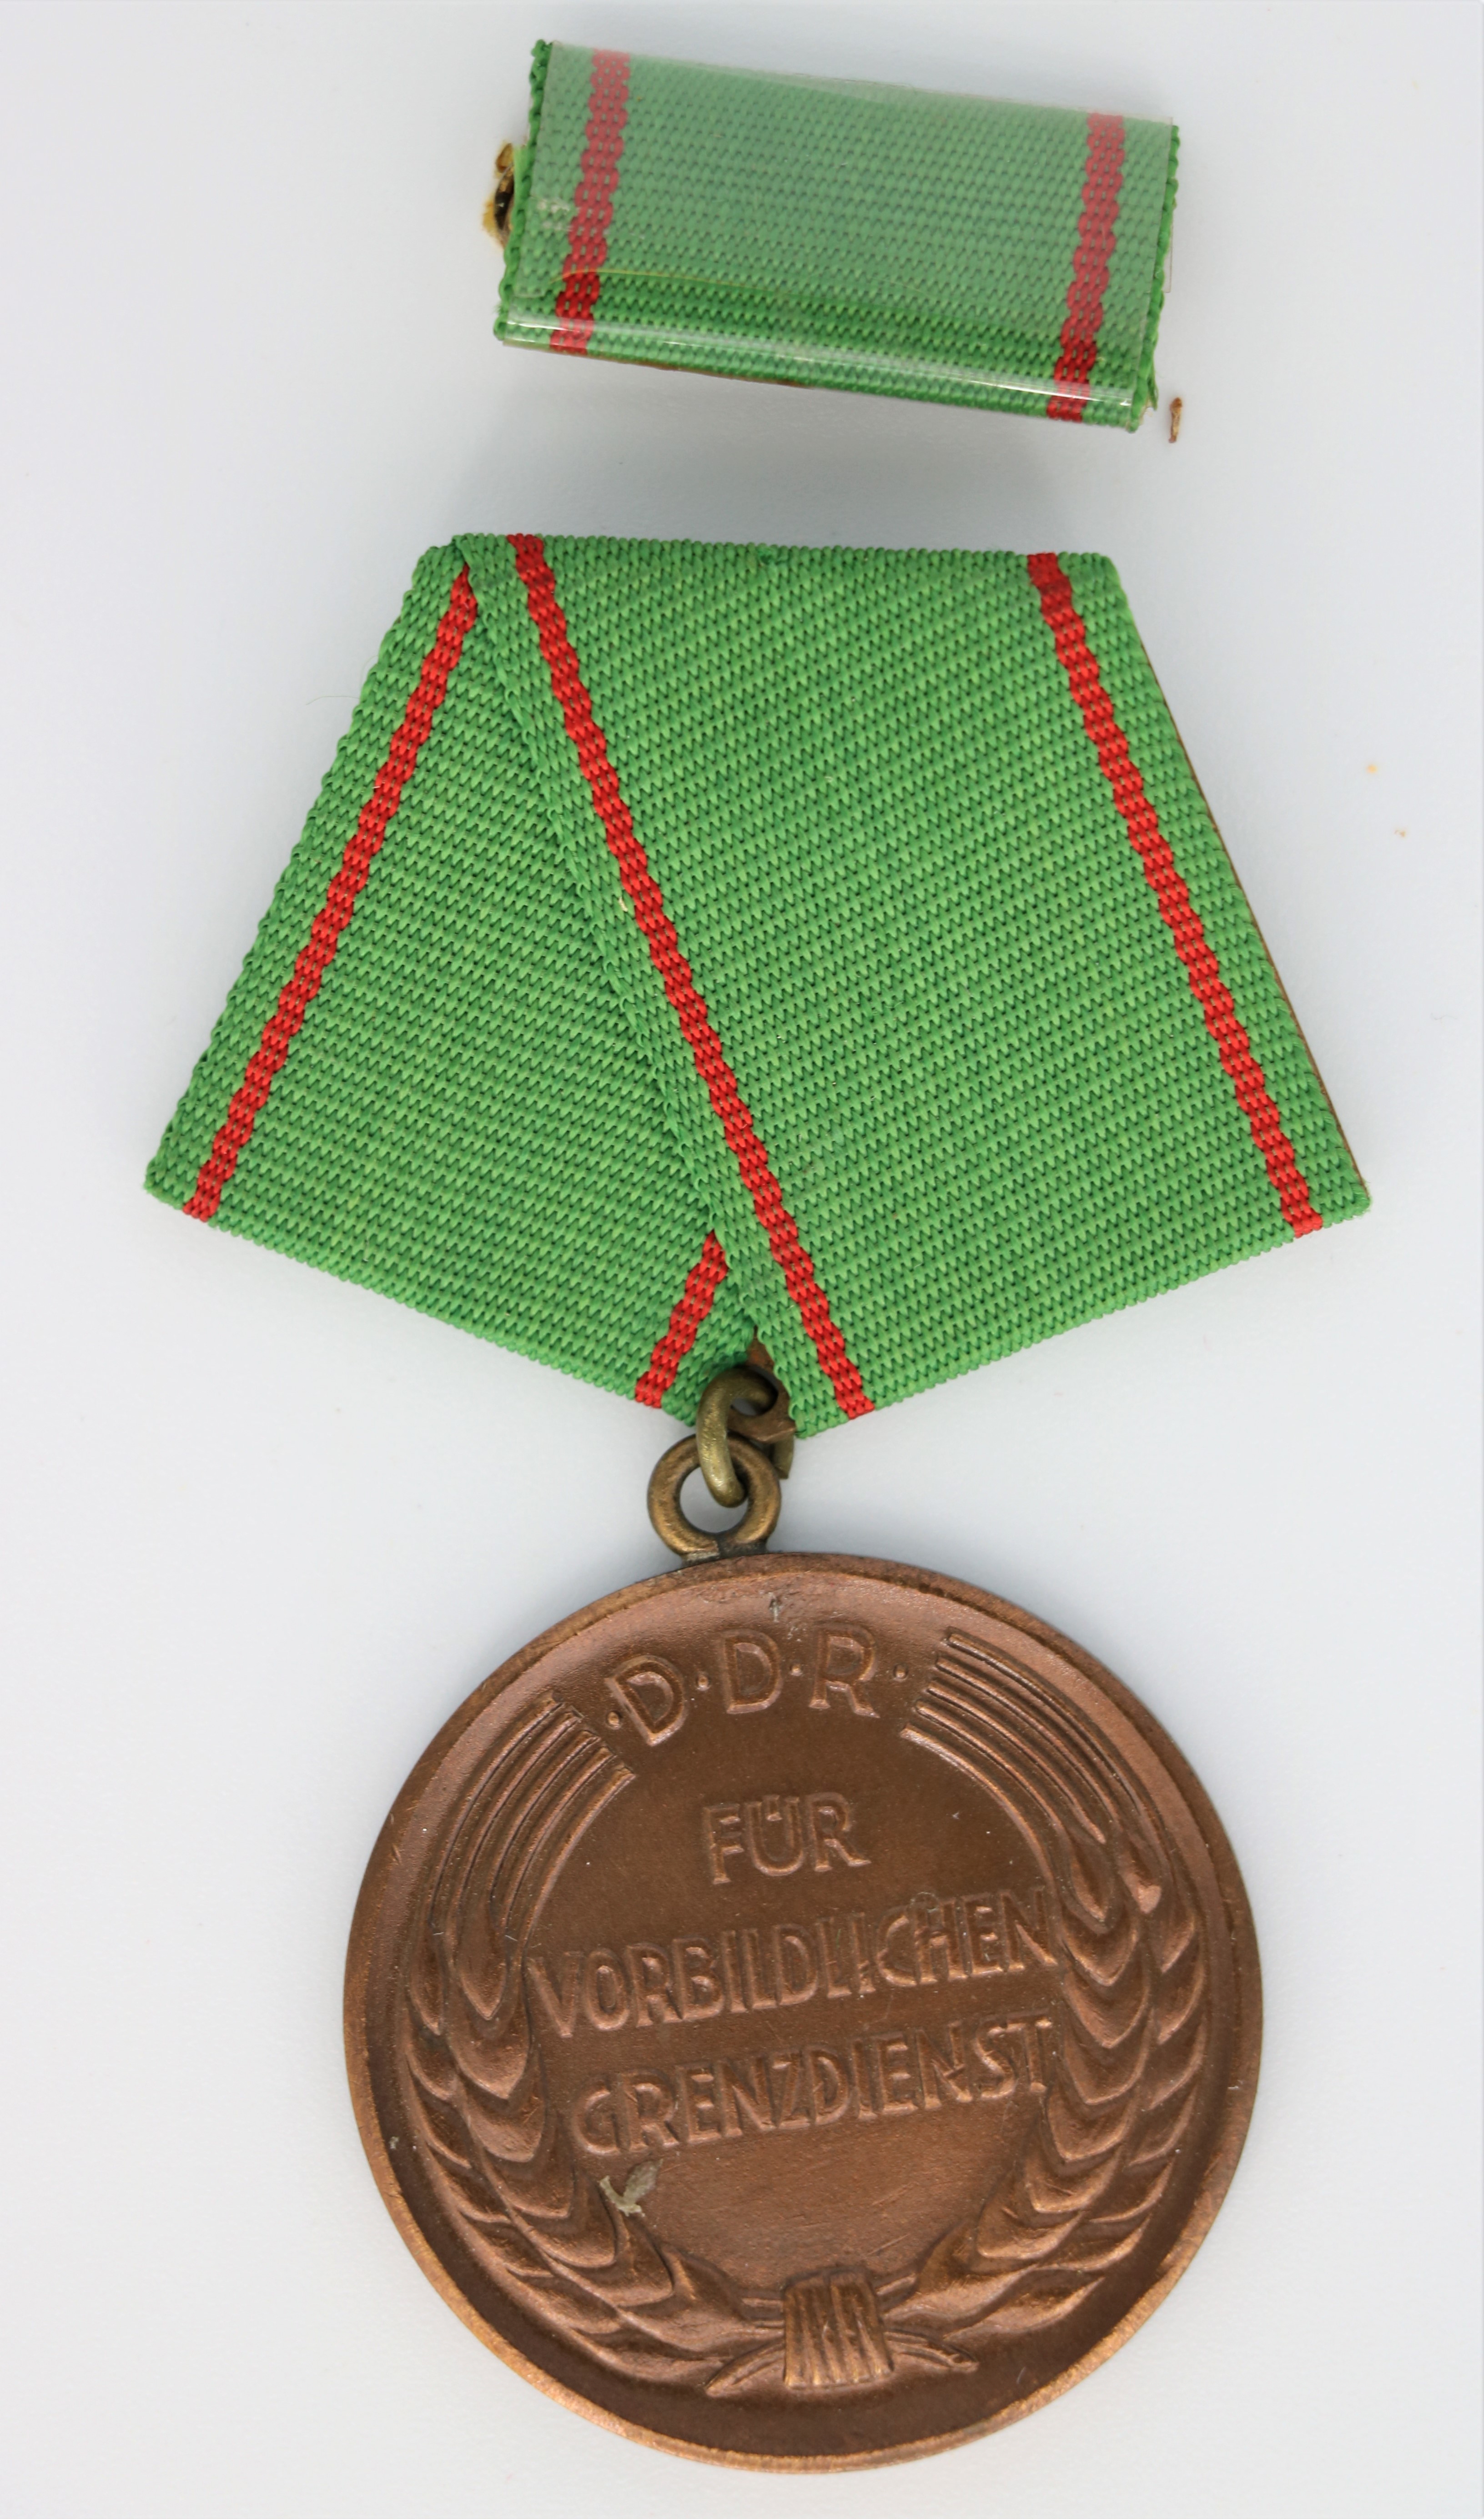 Medaille: "Für vorbildlichen Grenzdienst" mit Interimsspange" (Museum Berlin-Karlshorst CC BY-NC-SA)